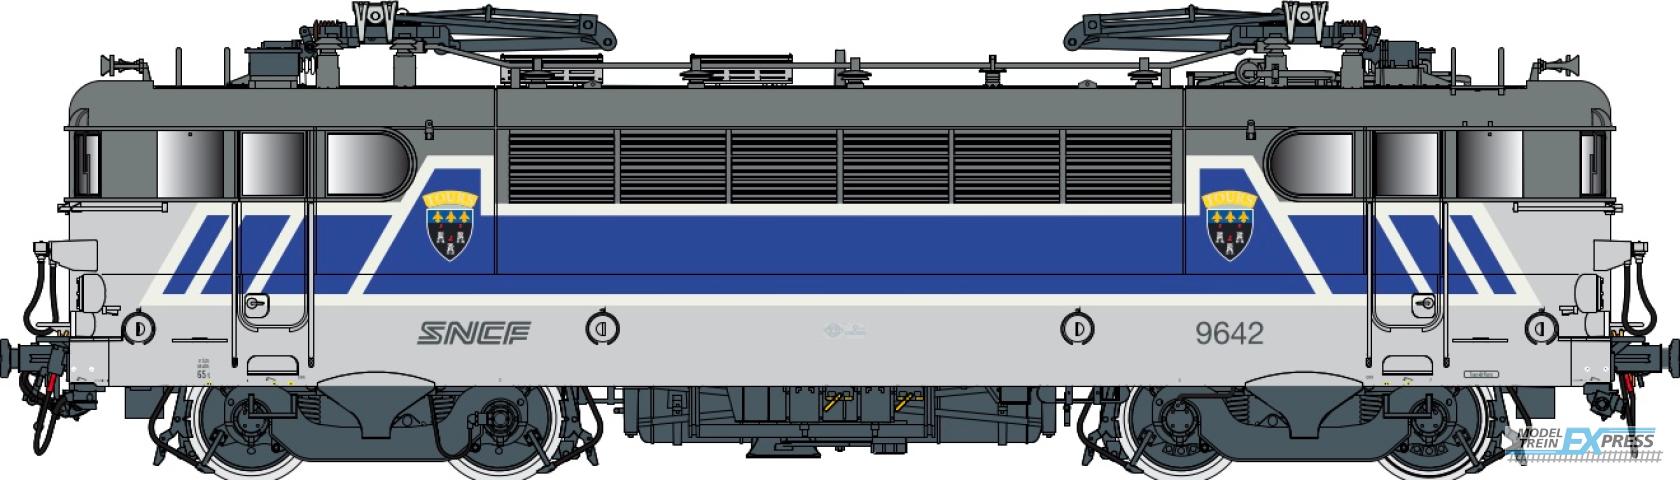 LS Models 10723S BB 9600, grijs/blauw/wit/oranje, Centre, noedels logo  /  Ep. V  /  SNCF  /  HO  /  AC SOUND  /  1 P.